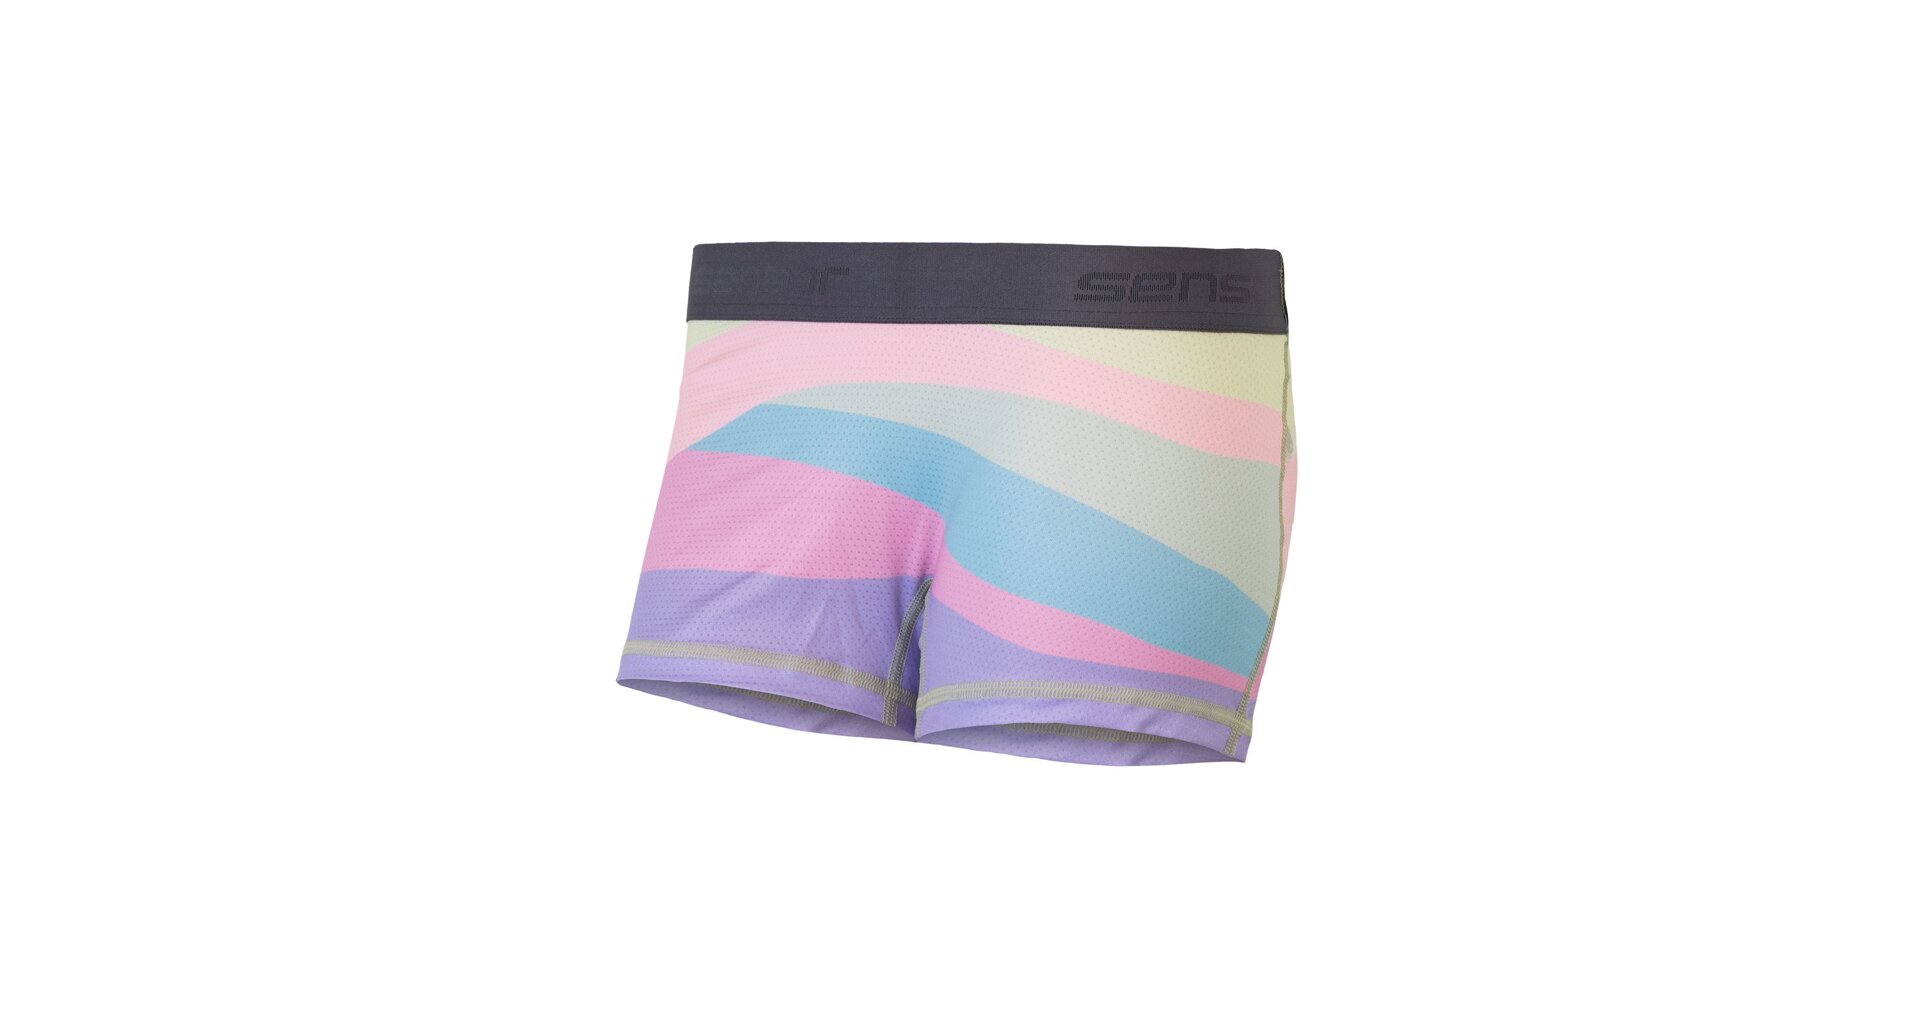 SENSOR COOLMAX IMPRESS dámské kalhotky s nohavičkou sand/stripes Velikost: S